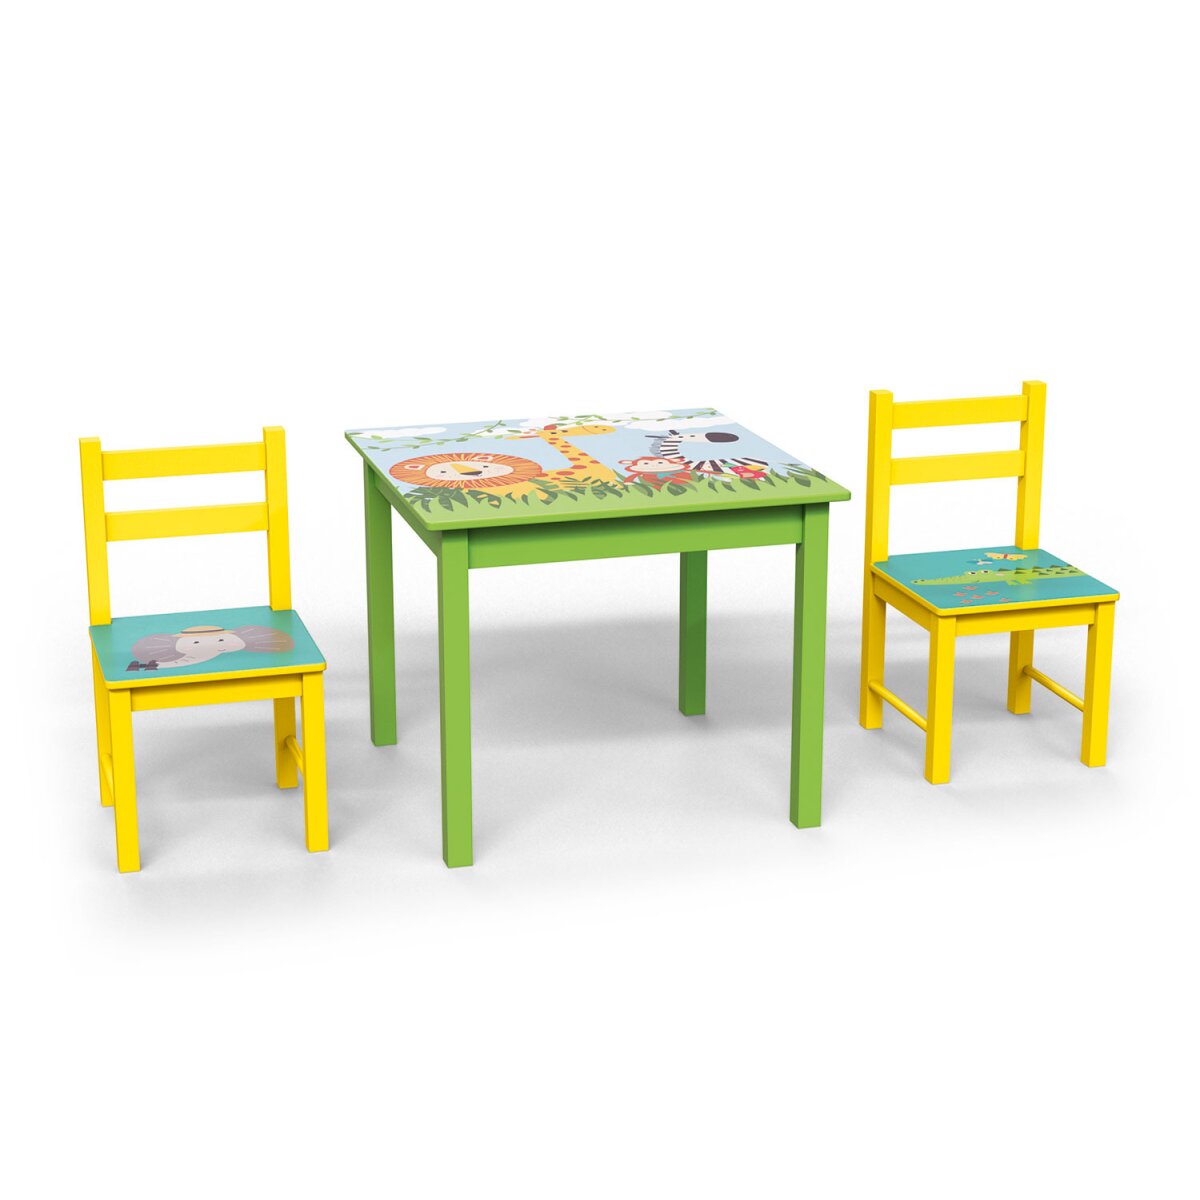 € mit Safari-Motiven Kinder - LIVARNO 46,99 sehr gut, home Stühlen, mit 2 B-Ware Tisch